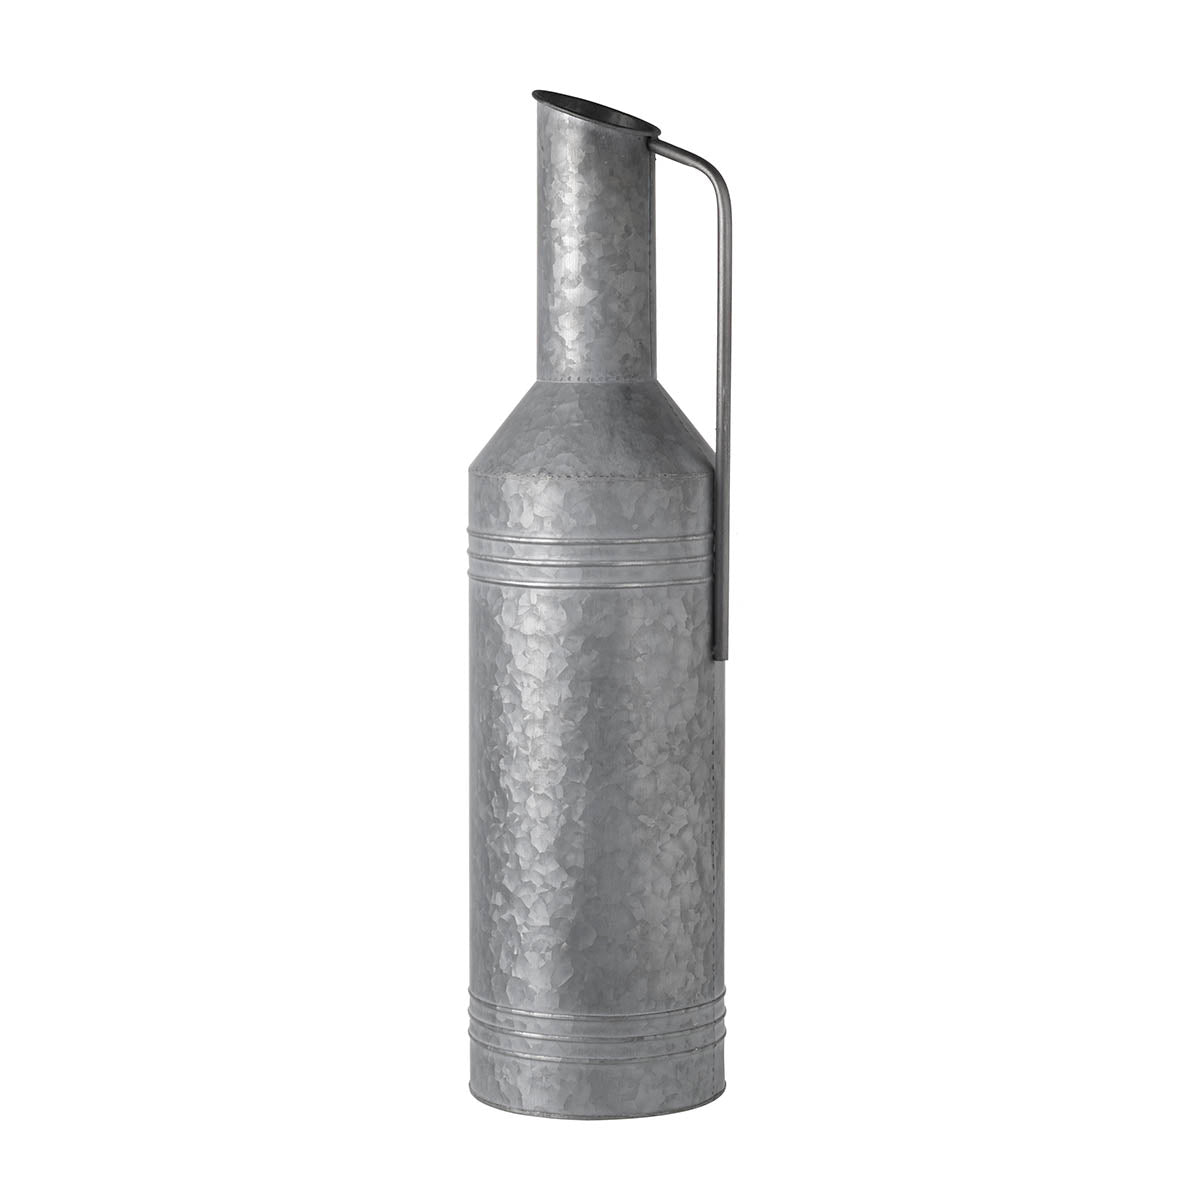 NAUNTON small rustic grey metal Vase